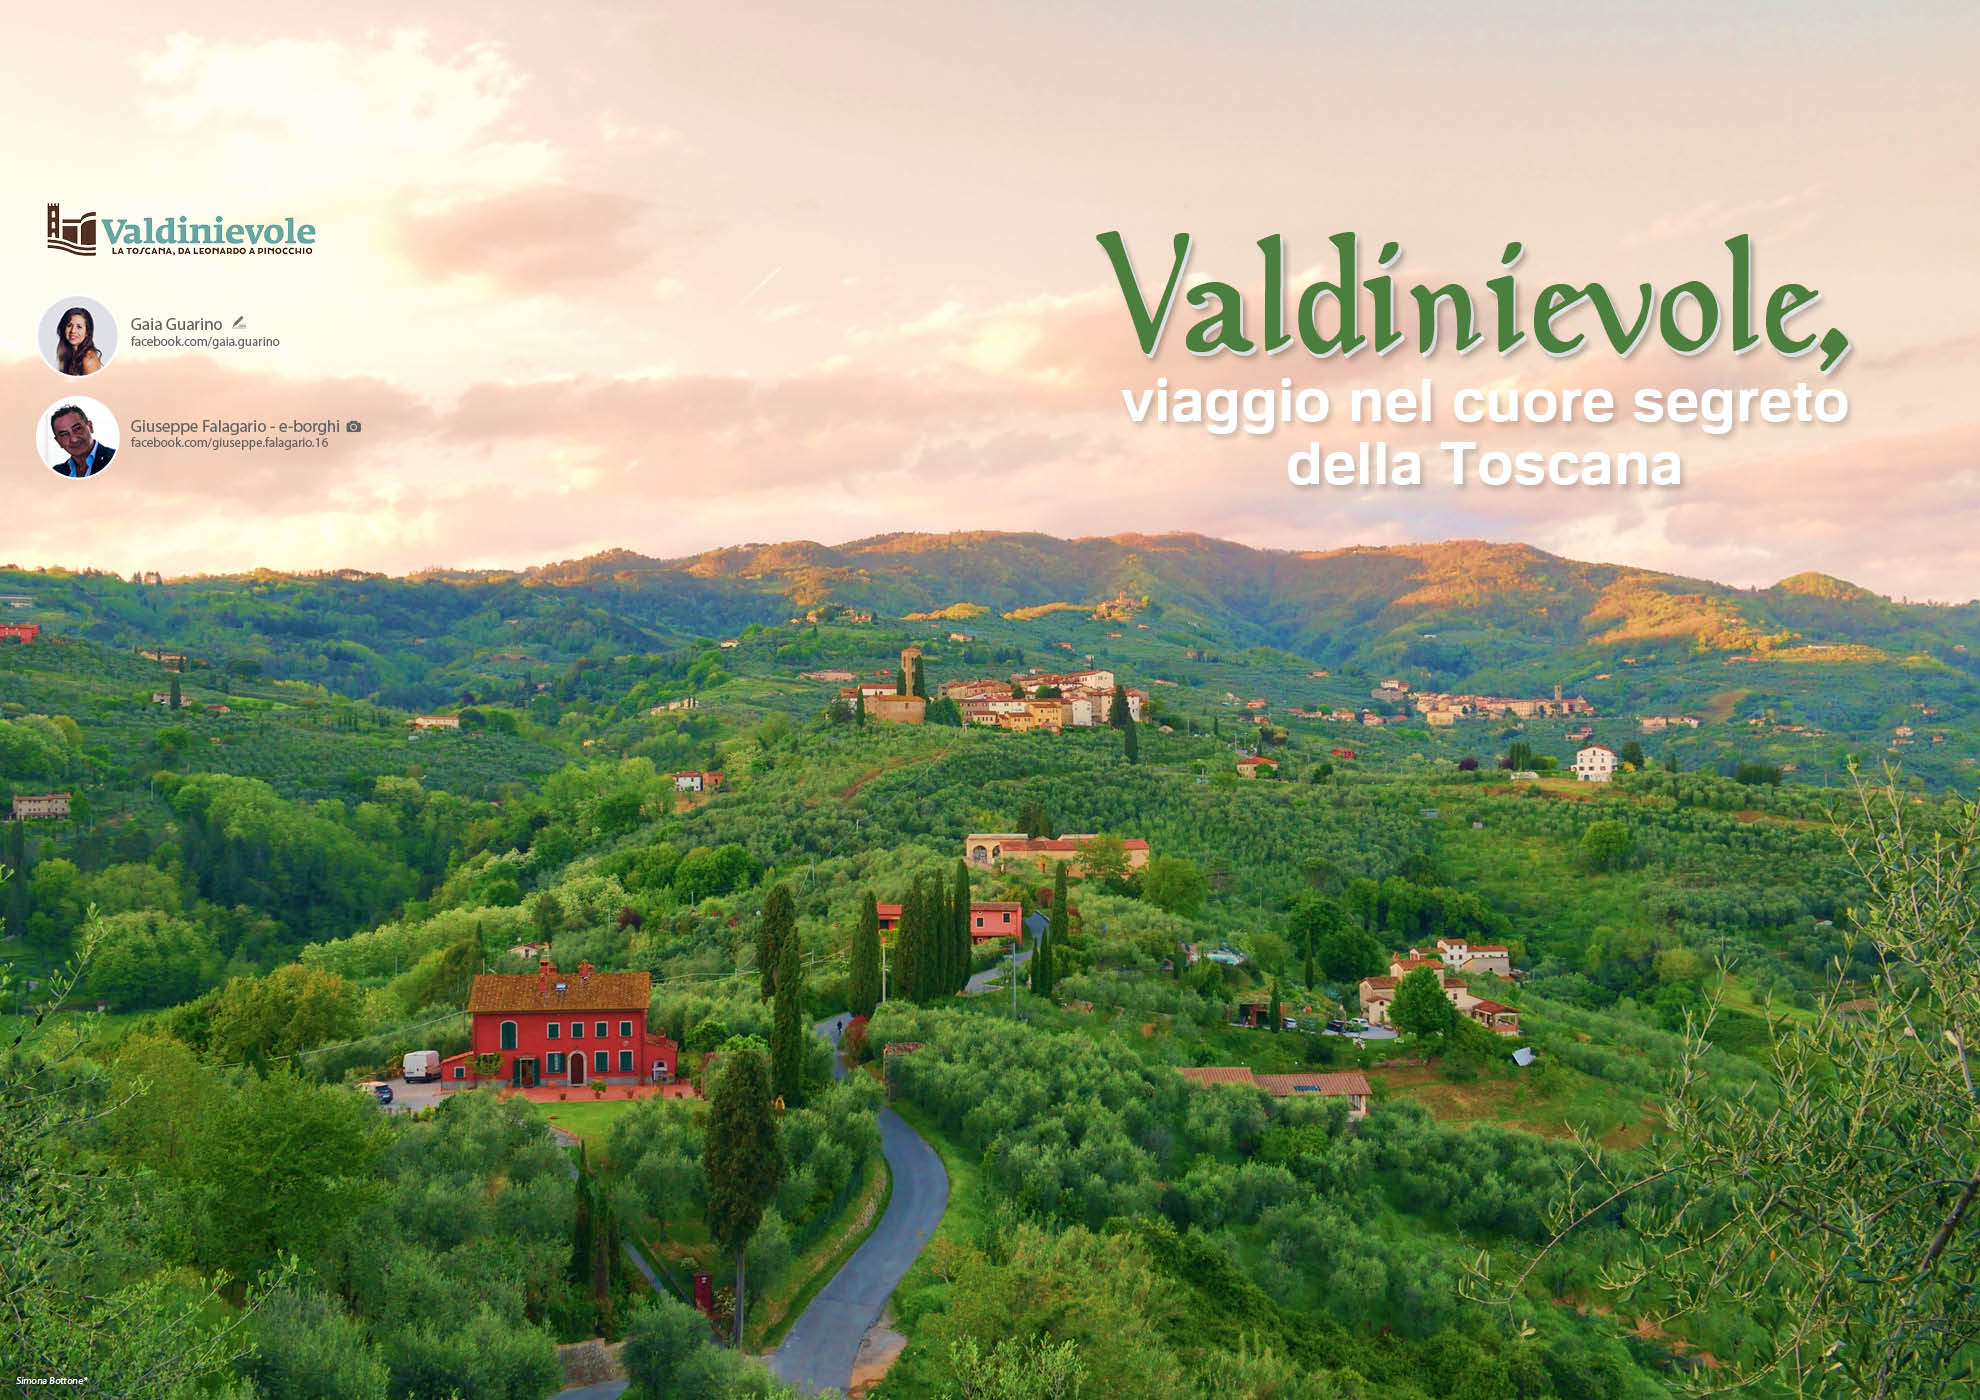 e-borghi travel 26: Speciale danze storiche e tradizionali - Valdinievole, viaggio nel cuore segreto della Toscana